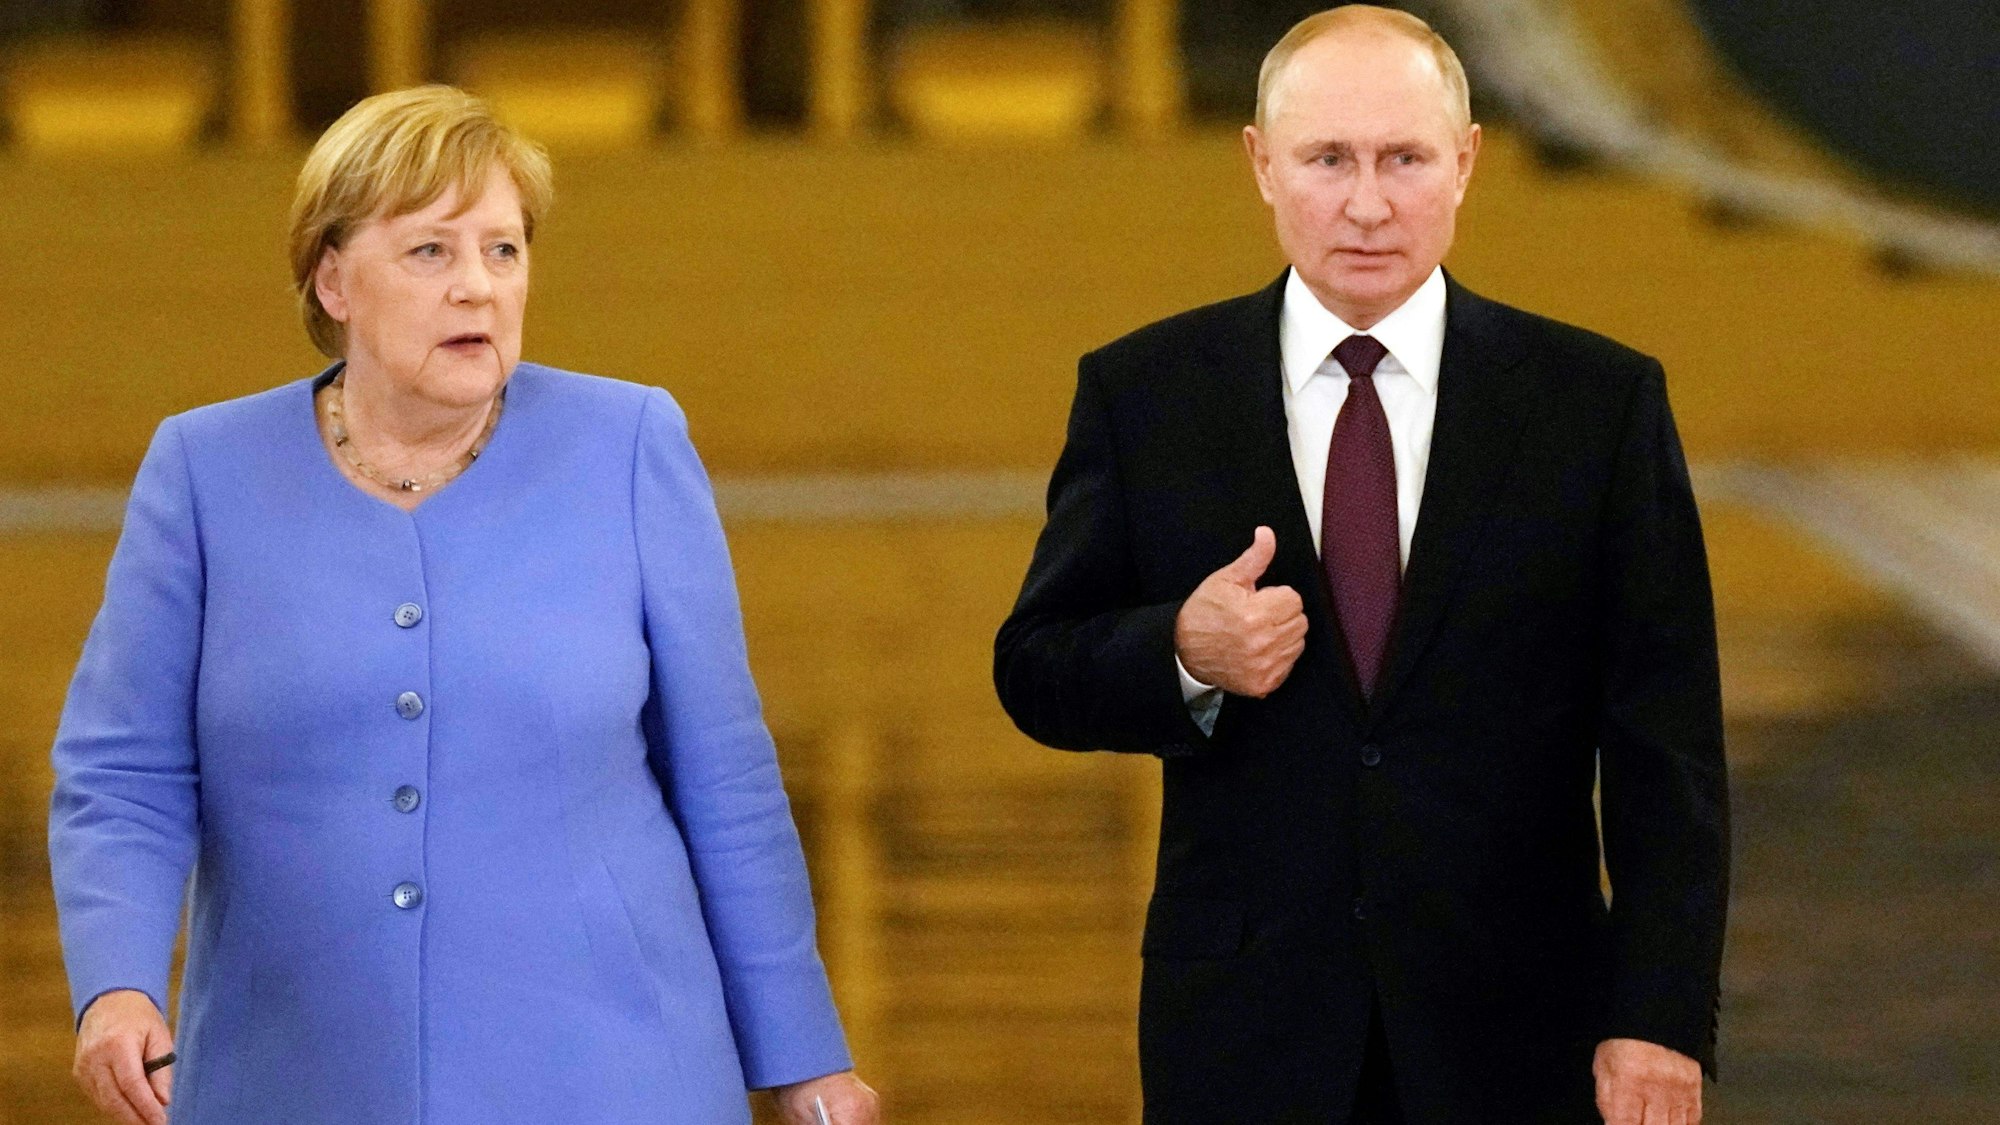 Altkanzlerin Angela Merkel (CDU) steht neben dem russischen Präsidenten Wladimir Putin, beide tragen formale Kleidung und blicken ernst.